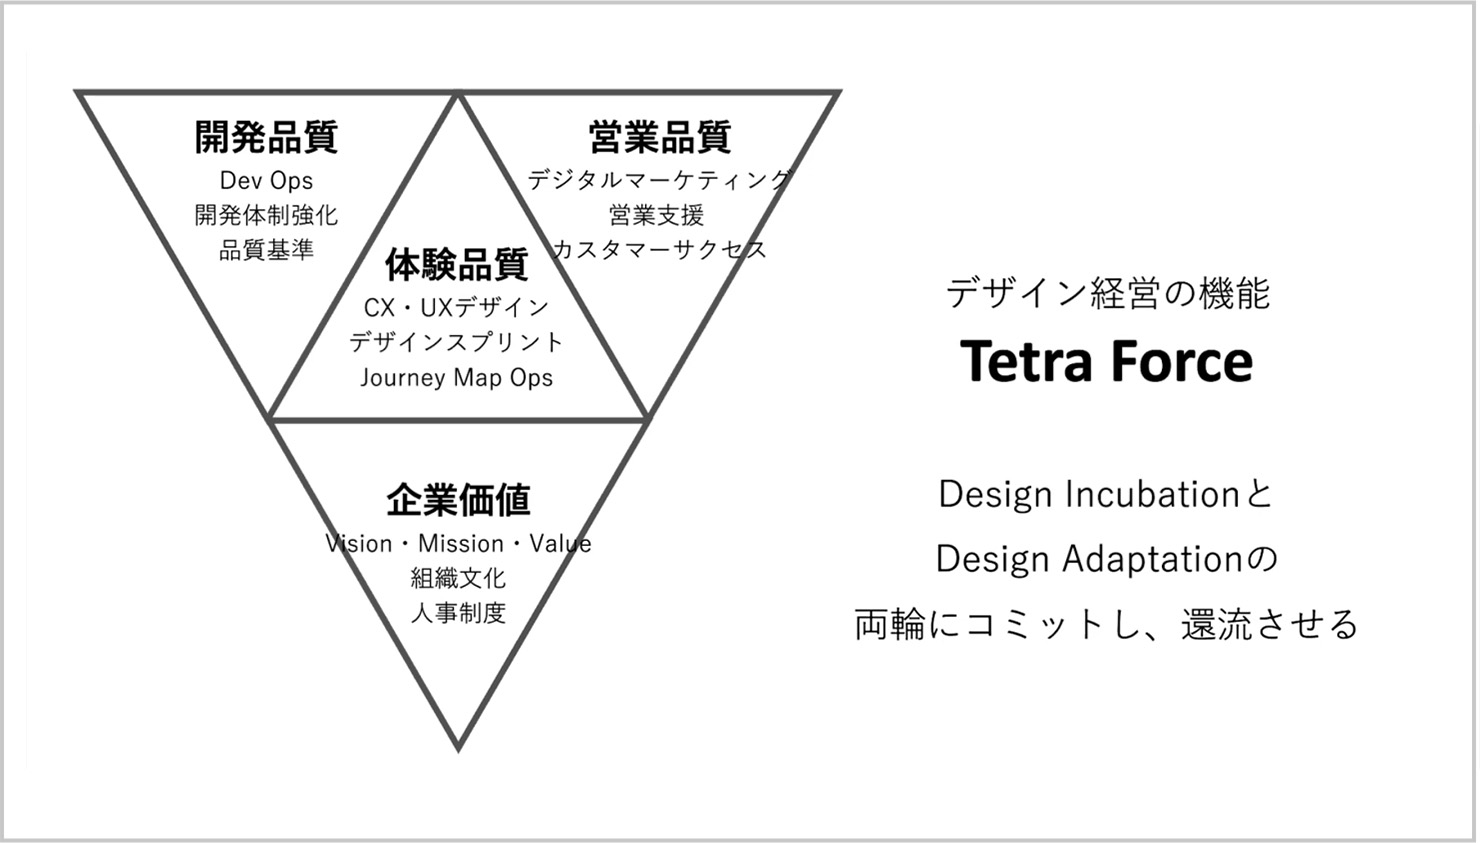 発表資料：Tetra Forceの概要を説明した図。Tetra Forceは「Design Incubation」と「Design Adaptation」の両輪にコミットし還流させるものとしている。Tetra Forceを構成するのは4つの要素であり、各要素の関連事項があげられている。「体験品質」はCX・UXデザインやデザインスプリントなど。「企業価値」はVision・Mission・Valueや組織文化など。「開発品質」はDev Opsや開発体制強化など。「営業品質」はデジタルマーケティングや営業支援など。